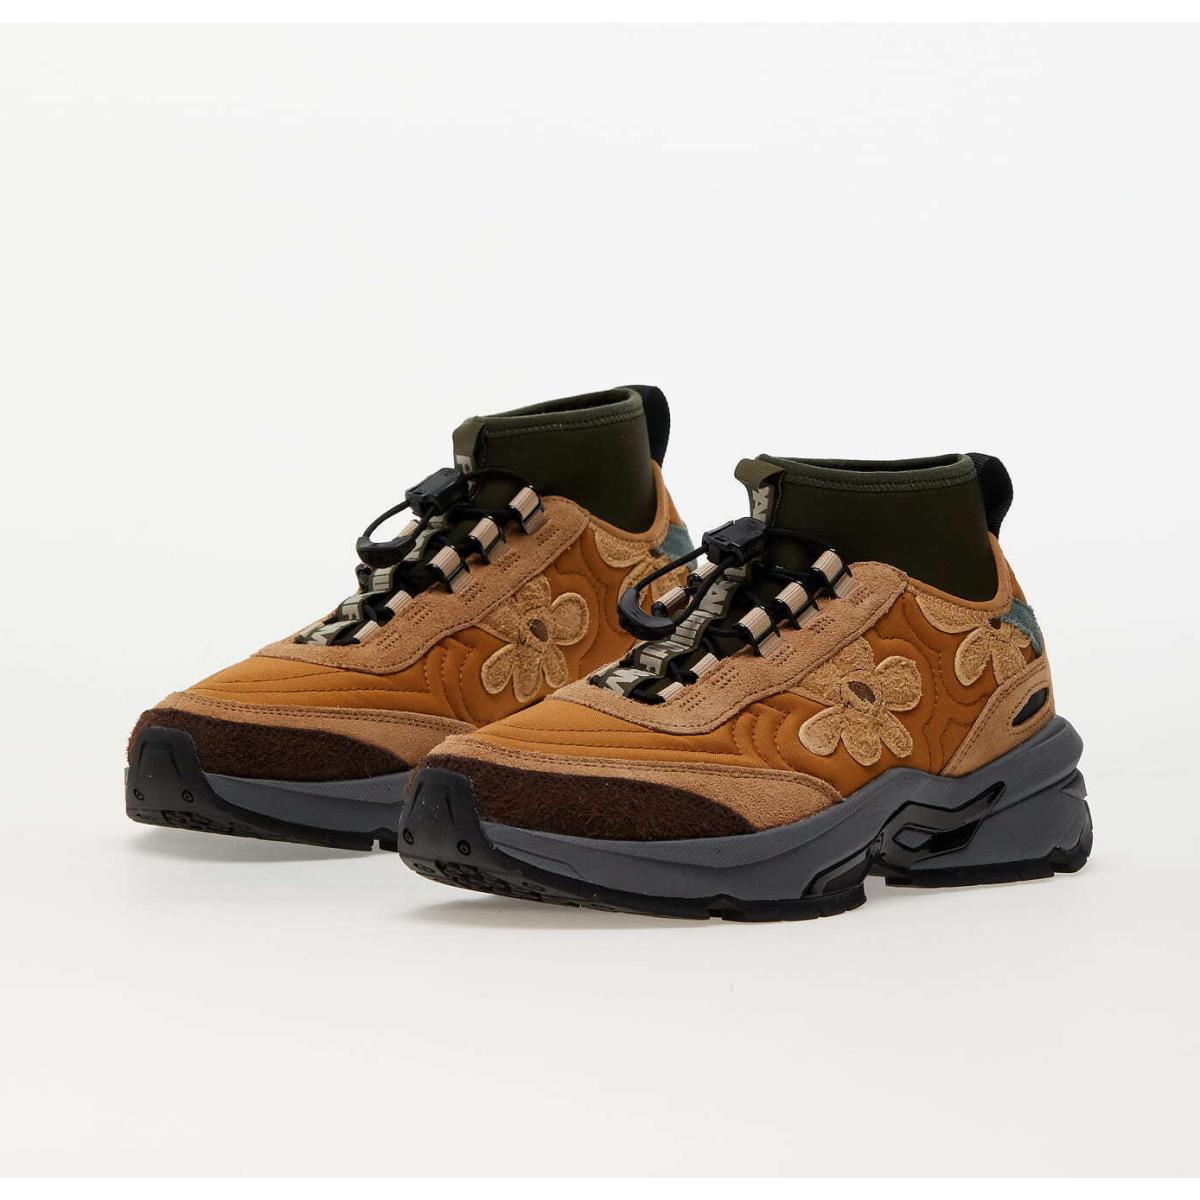 Puma x Perks and Mini Nano 38703701 Boot Sneakers Shoes